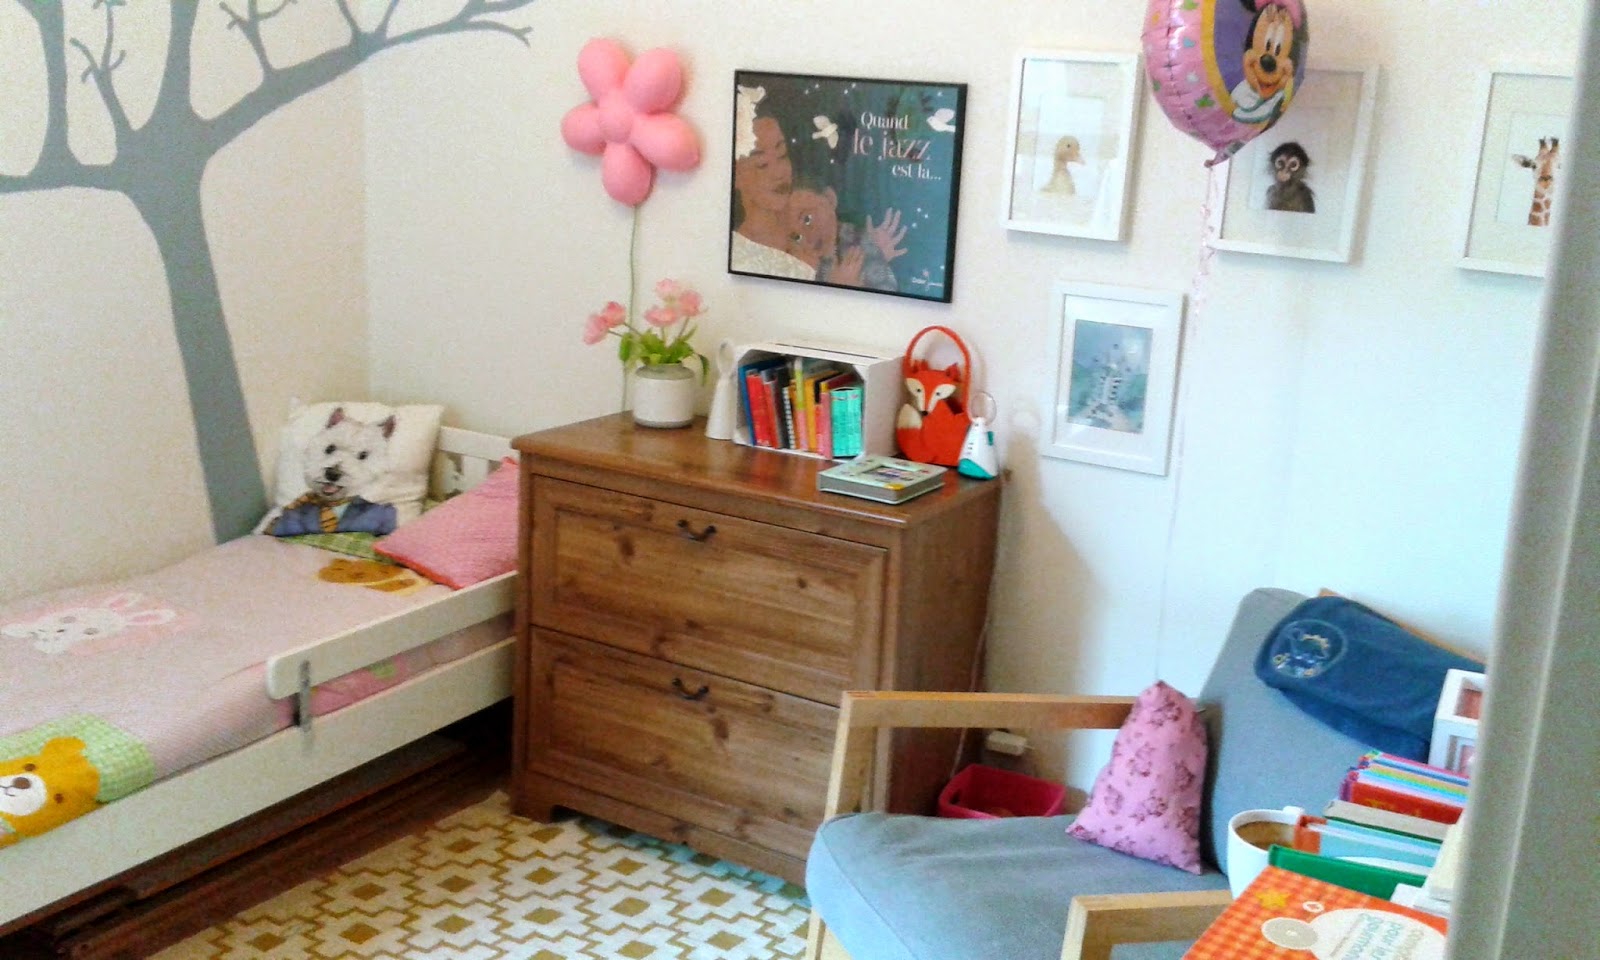 La décoration d'une chambre d'enfant selon la pédagogie de Maria Montessori  - Elle Décoration